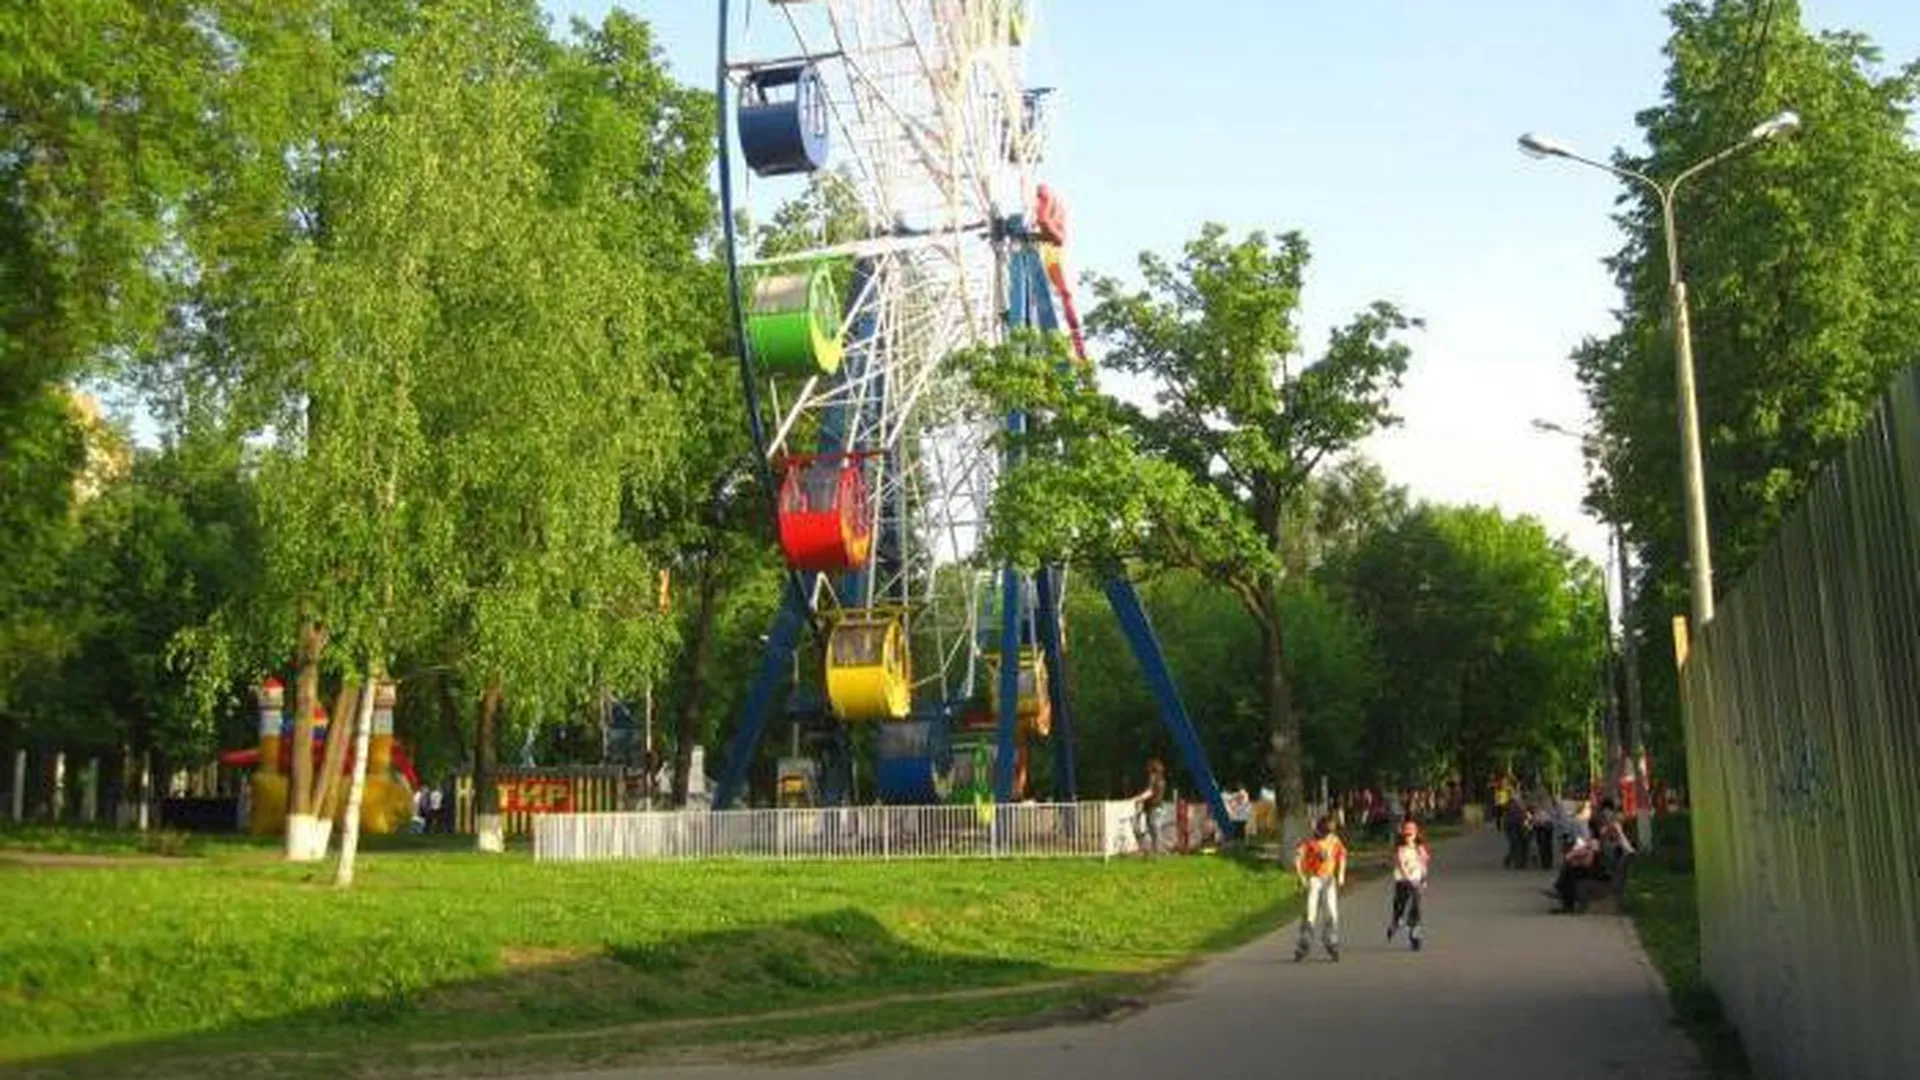 Обновленный парк Талалихина в Подольске планируют открыть ко Дню защиты детей 1 июня